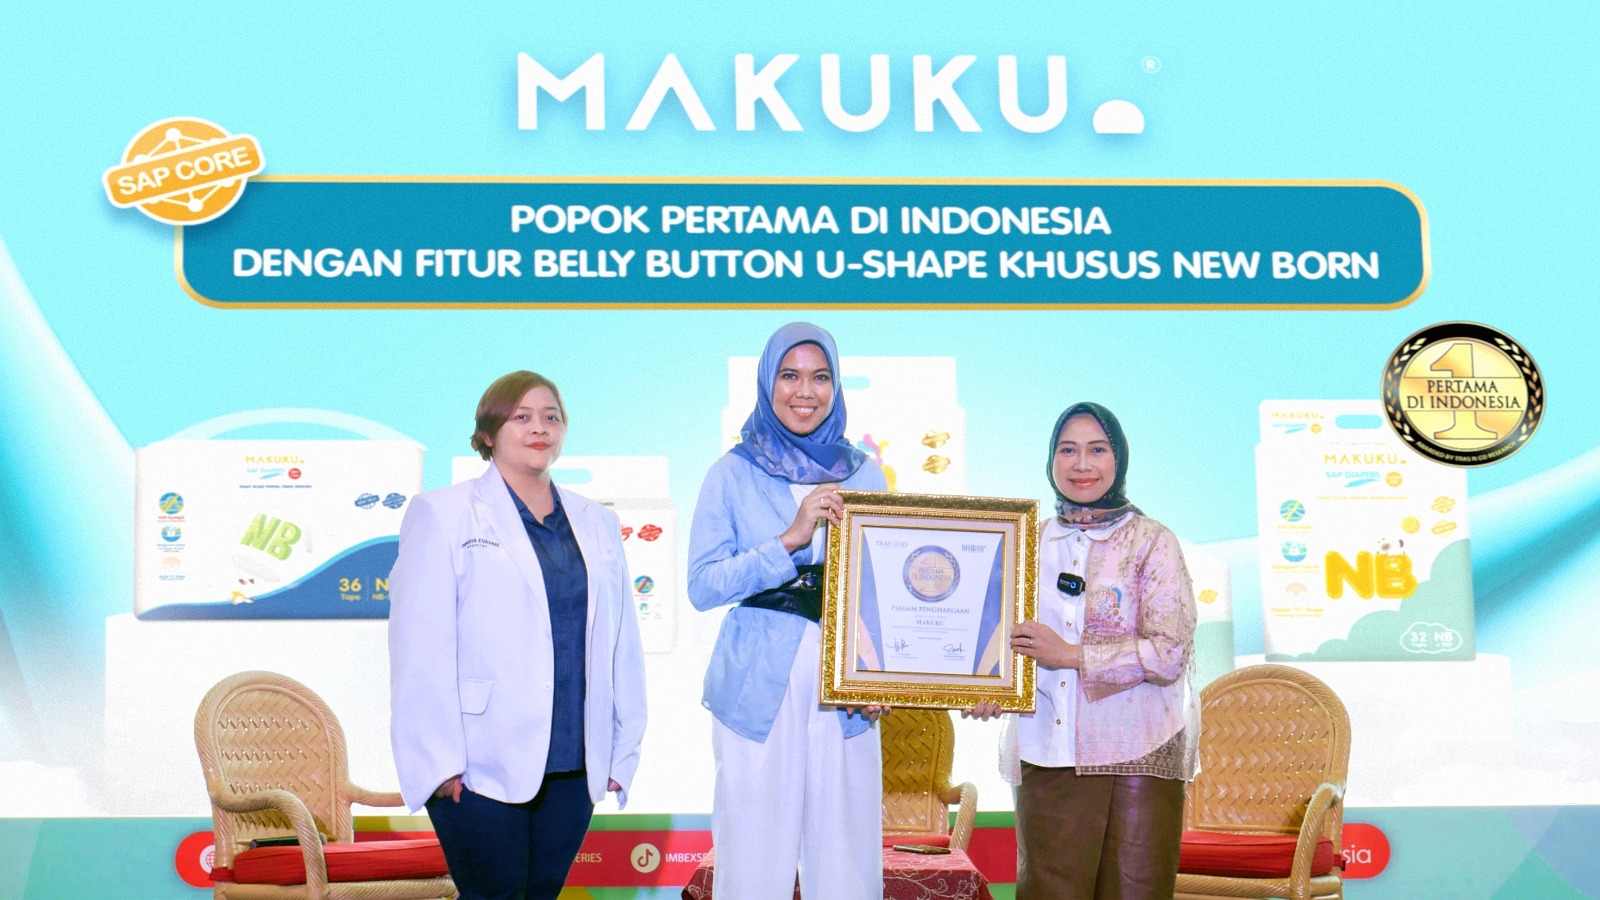 Pertama di Indonesia, MAKUKU Ciptakan Fitur Belly Button U-shape Khusus Newborn